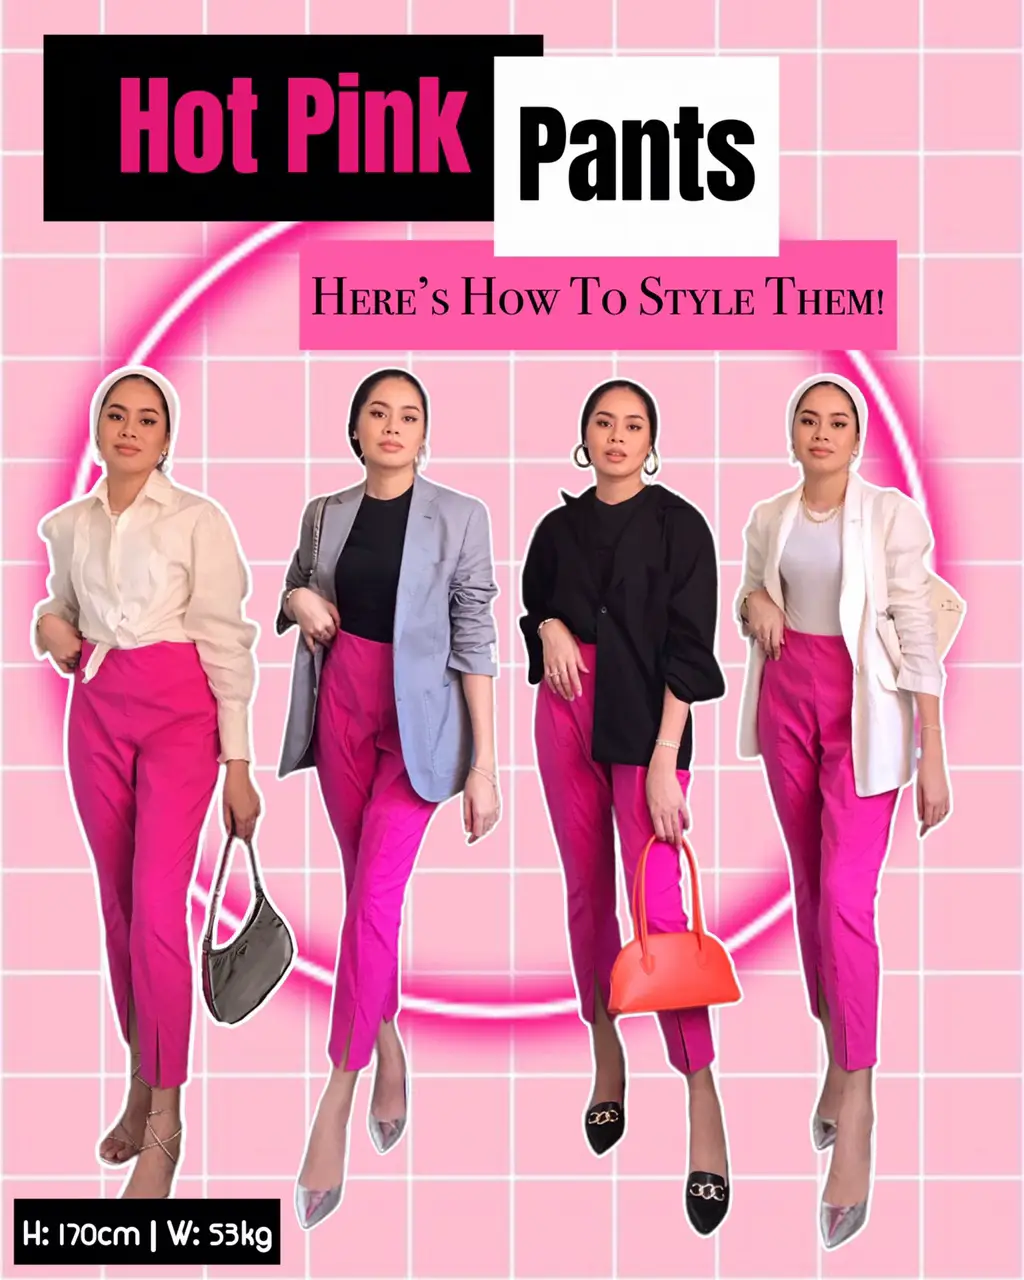 Hot Pink pants for the daysss🤌🏻, Galeri disiarkan oleh firajamain